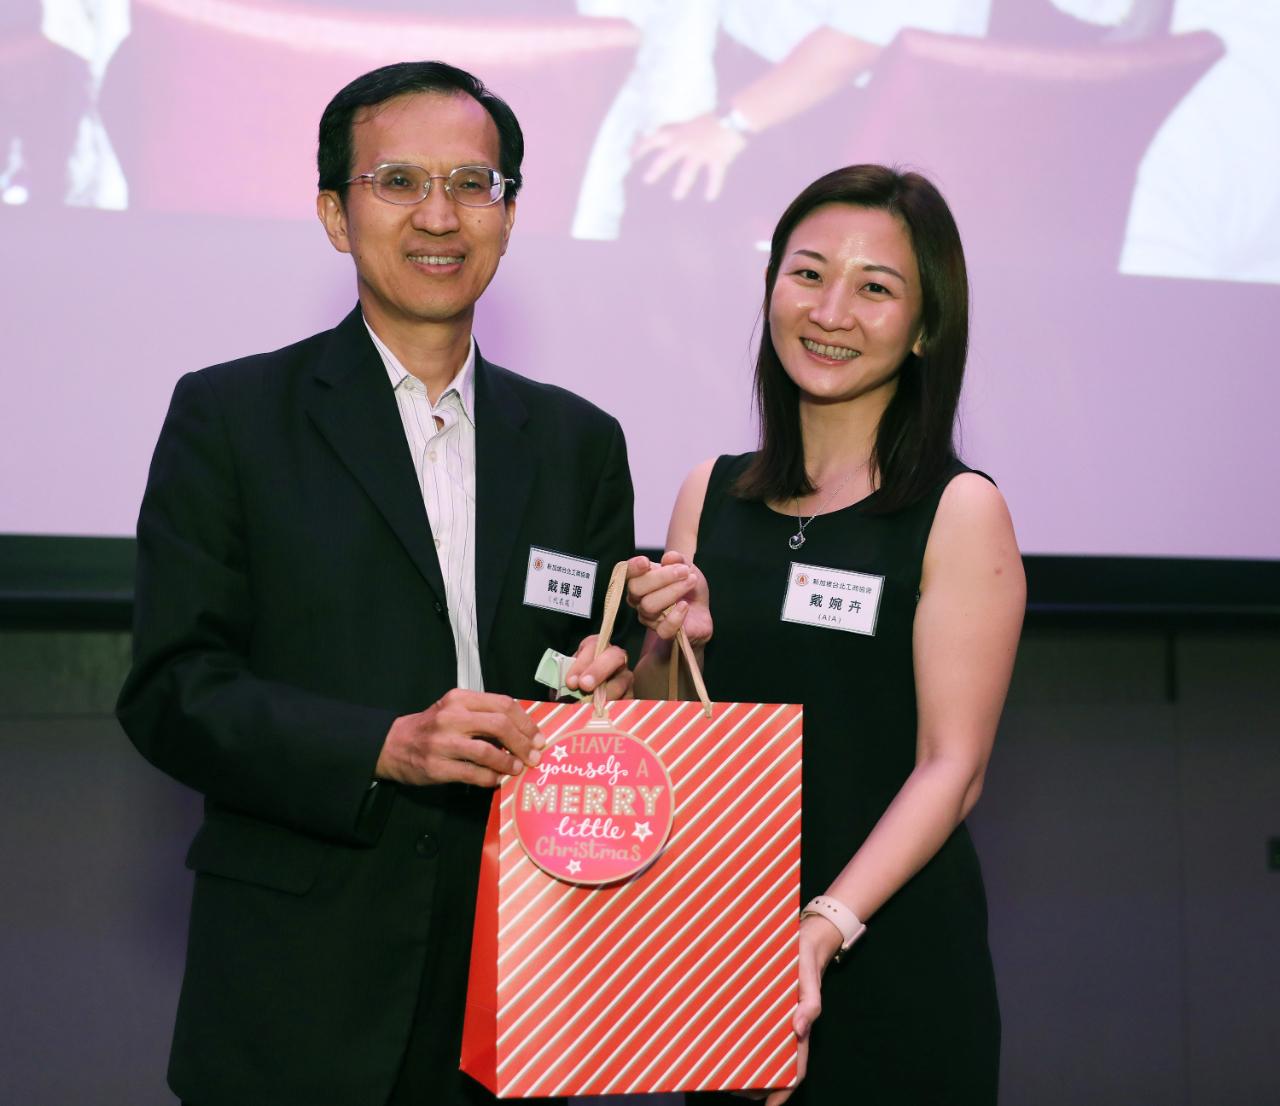 戴副代表(圖左)與摸彩獲獎者新加坡台北工商協會青商會會員戴婉卉小姐合影。(107/12/22)